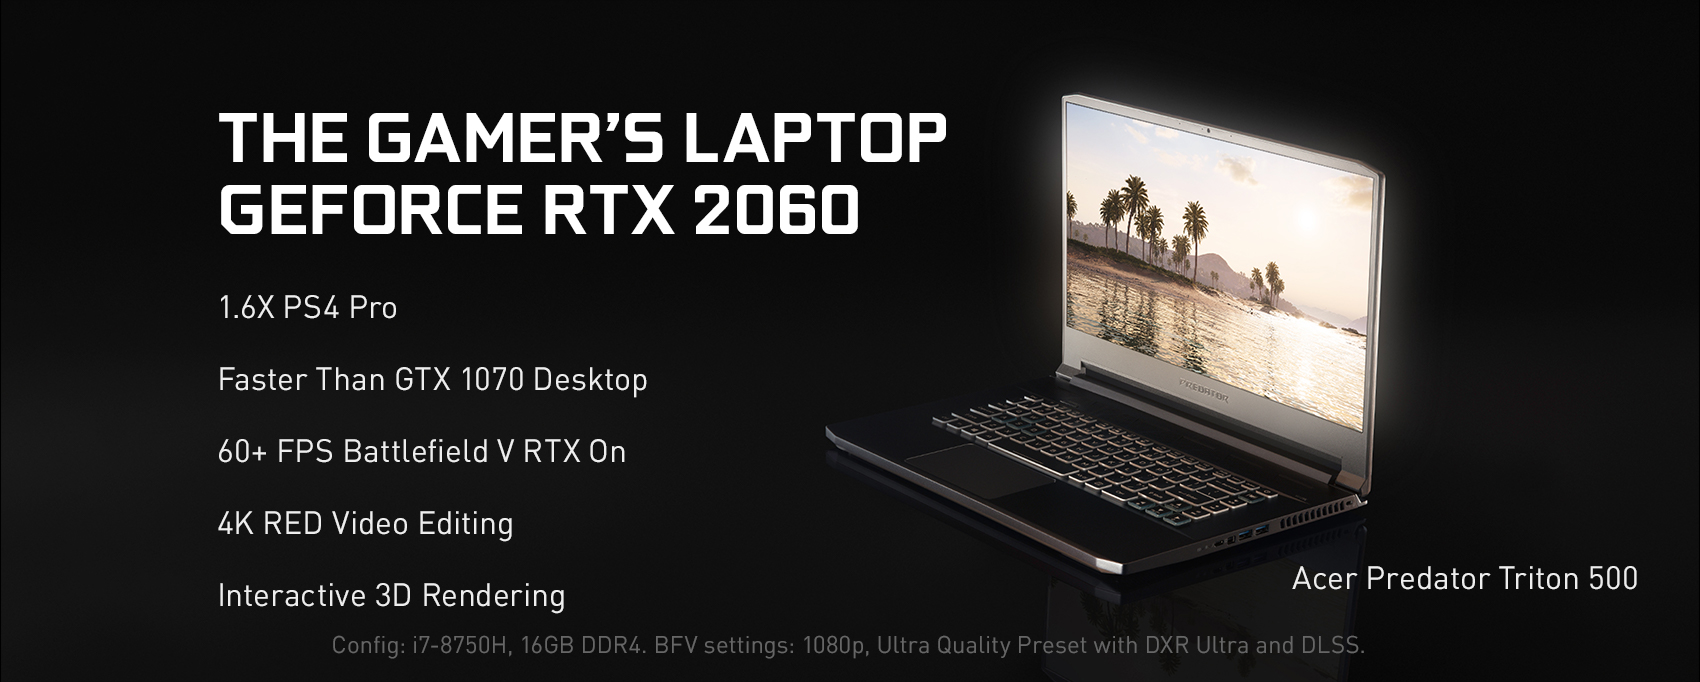 ゲーマーのノート PC、GeForce RTX 2060